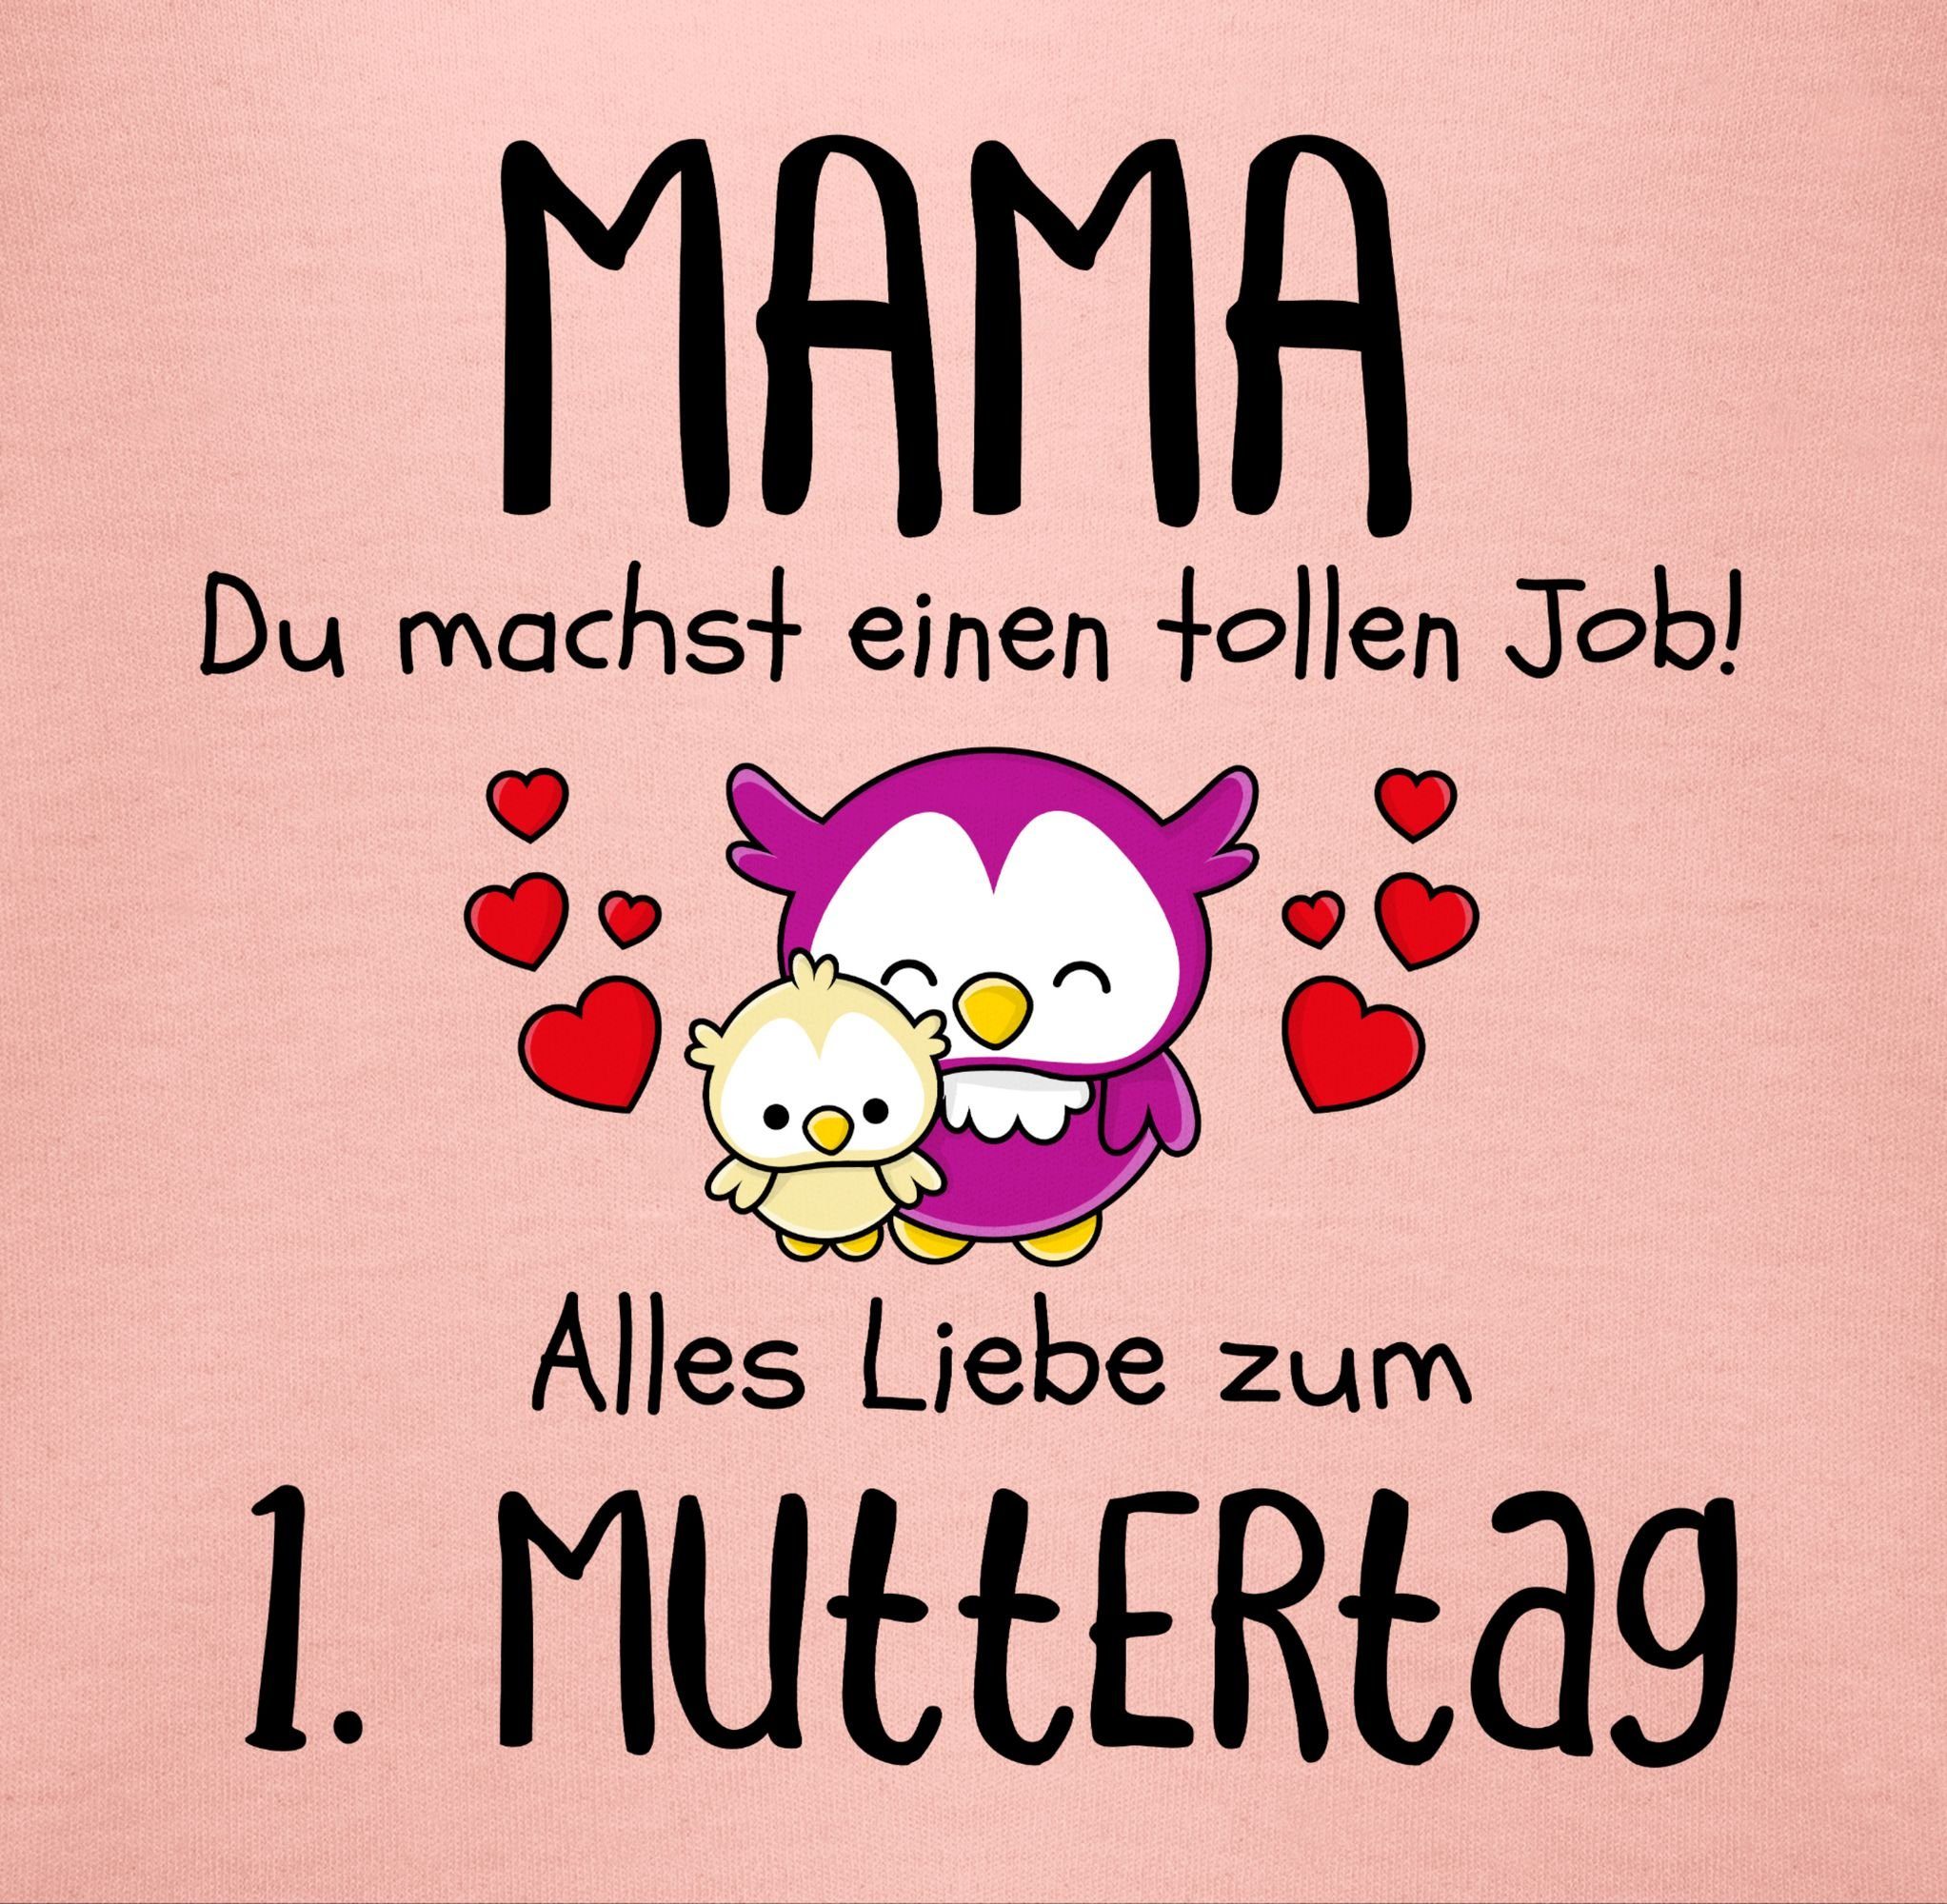 Muttertagsgeschenk Shirtracer 1. Babyrosa Muttertag - Mama T-Shirt Erster 2